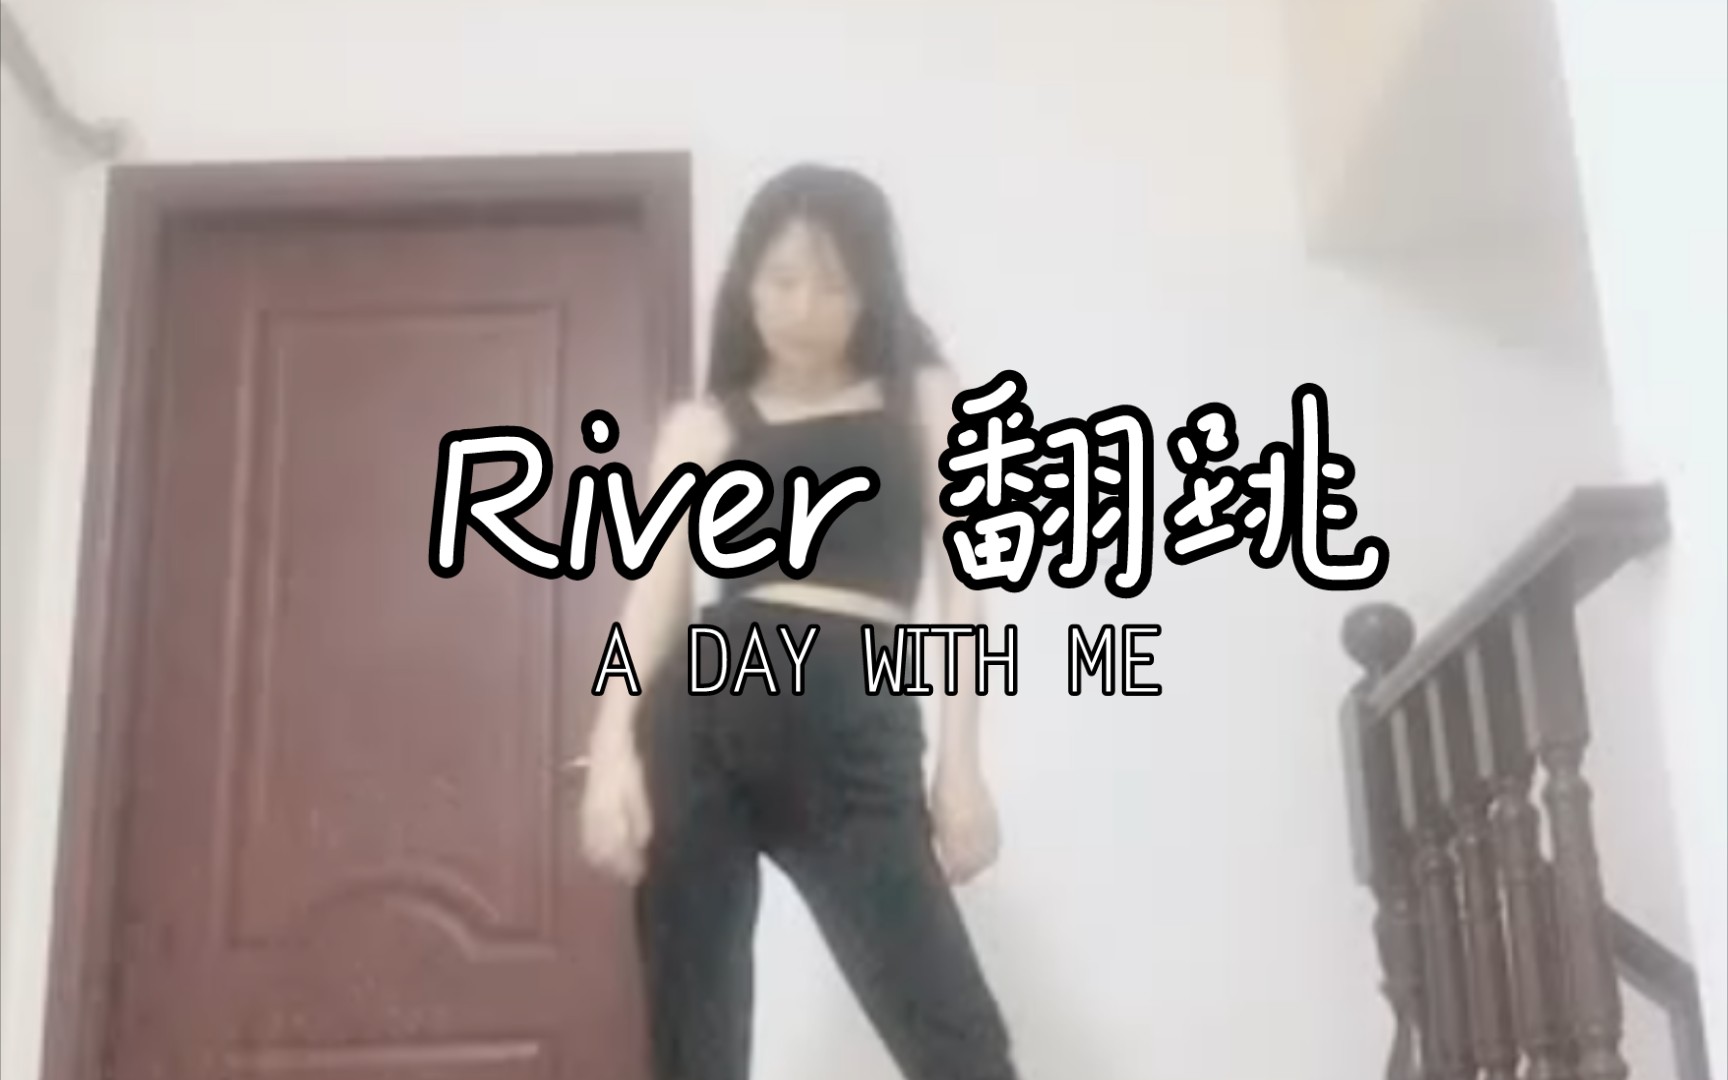 【浅】miss a 智秀版《river》翻跳